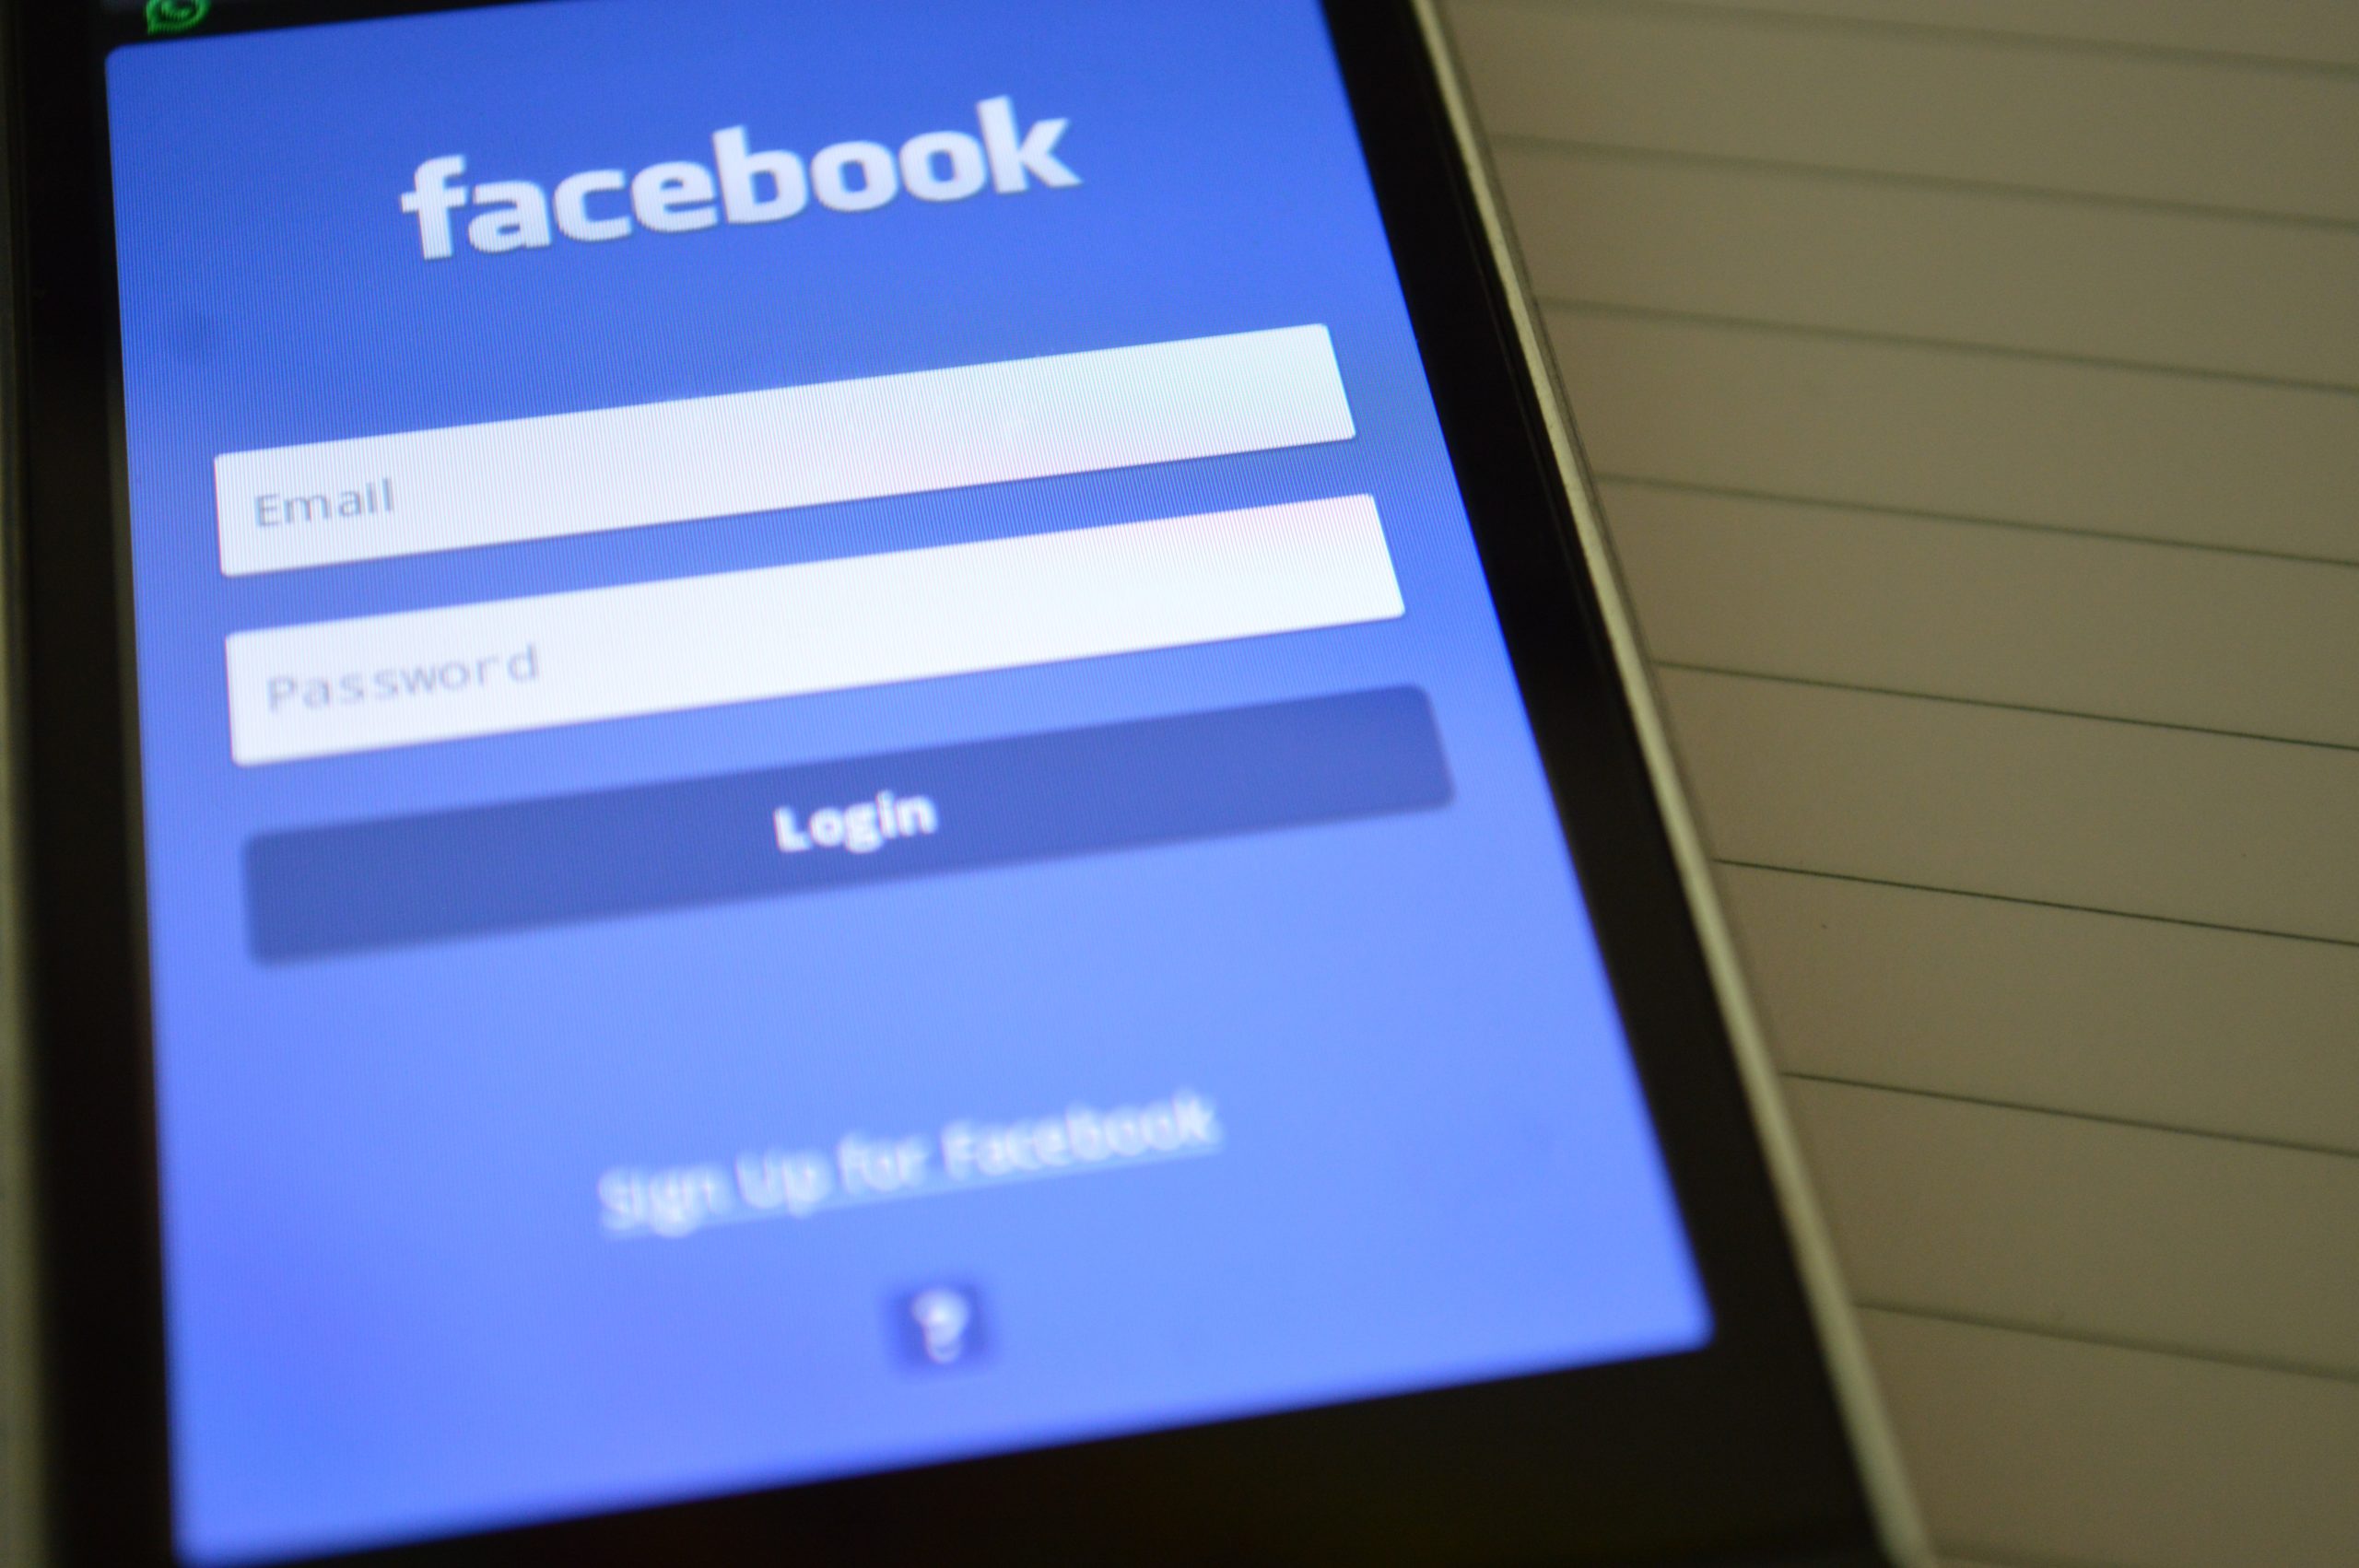 Συναγερμός στο Facebook –ΙΣΩΣ παραβιάστηκαν λογαριασμοί σχεδόν 1 εκατ. χρηστών Facebook-scaled